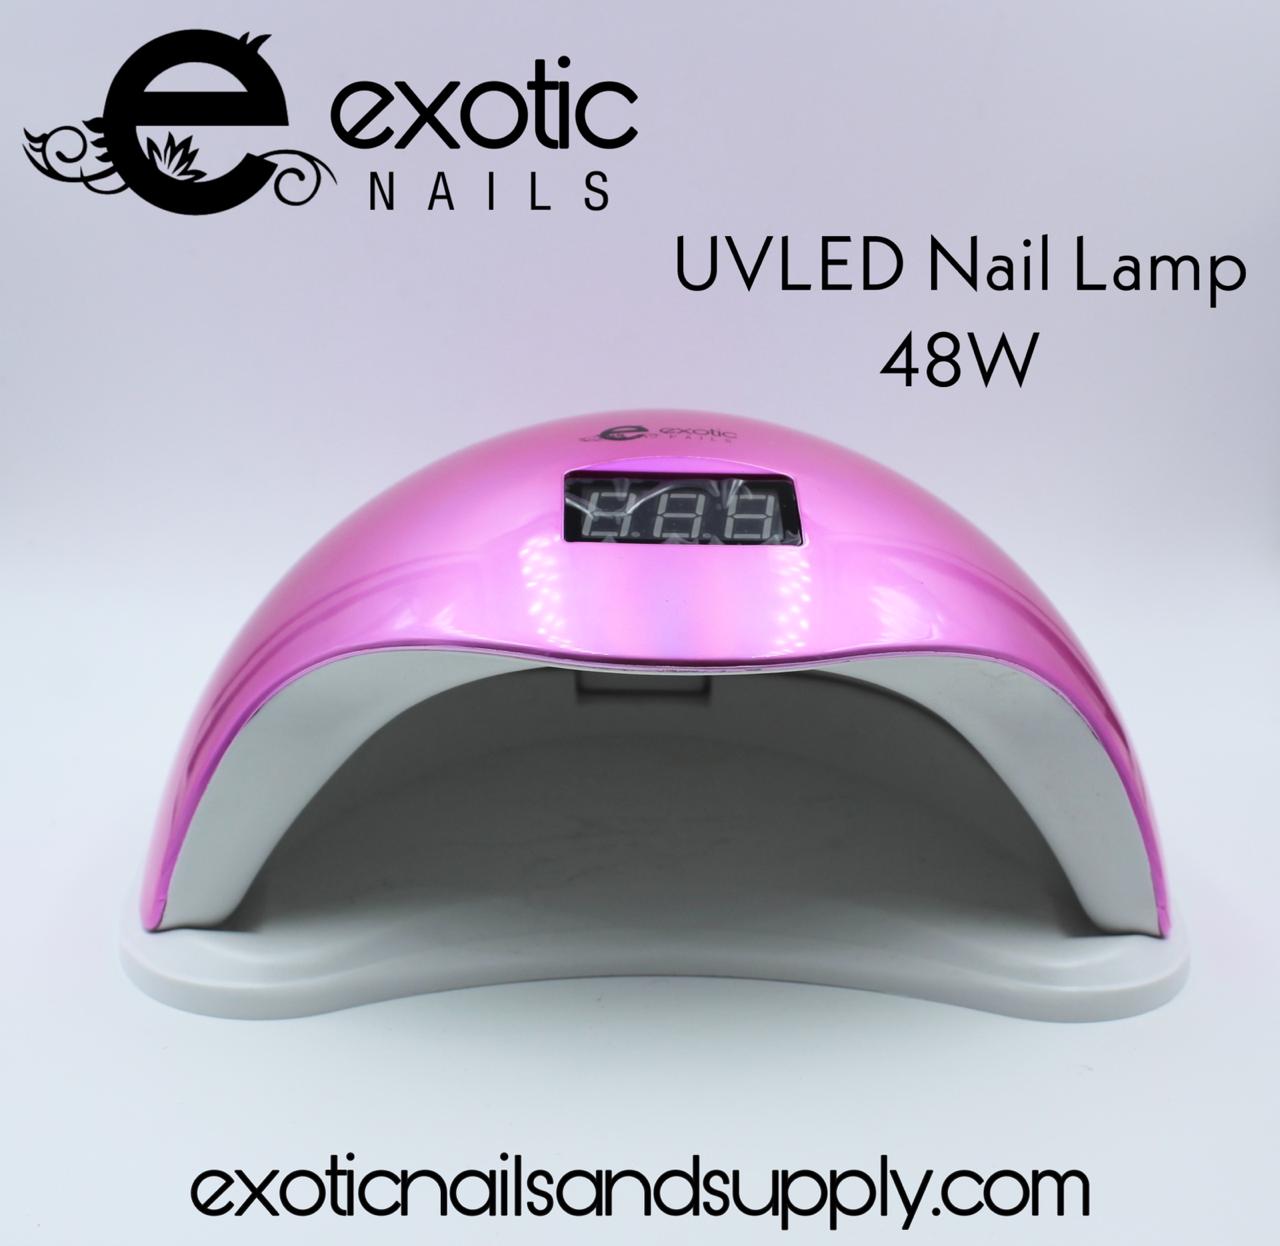 Mobray 48W LED UV Gel Nail Dryer Curing LED Nail India | Ubuy